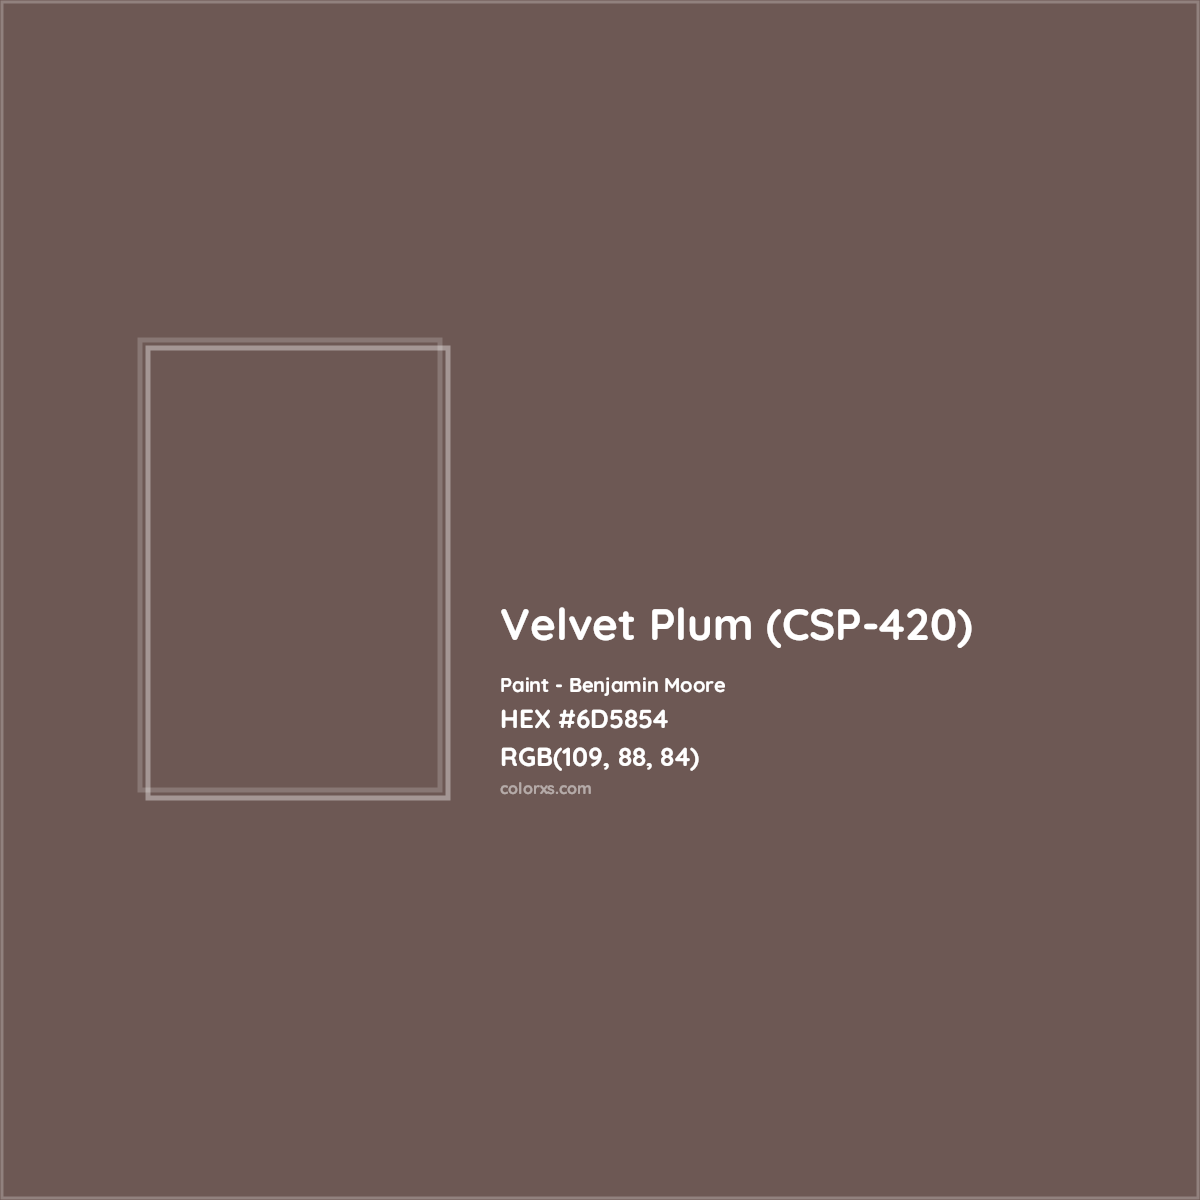 HEX #6D5854 Velvet Plum (CSP-420) Paint Benjamin Moore - Color Code